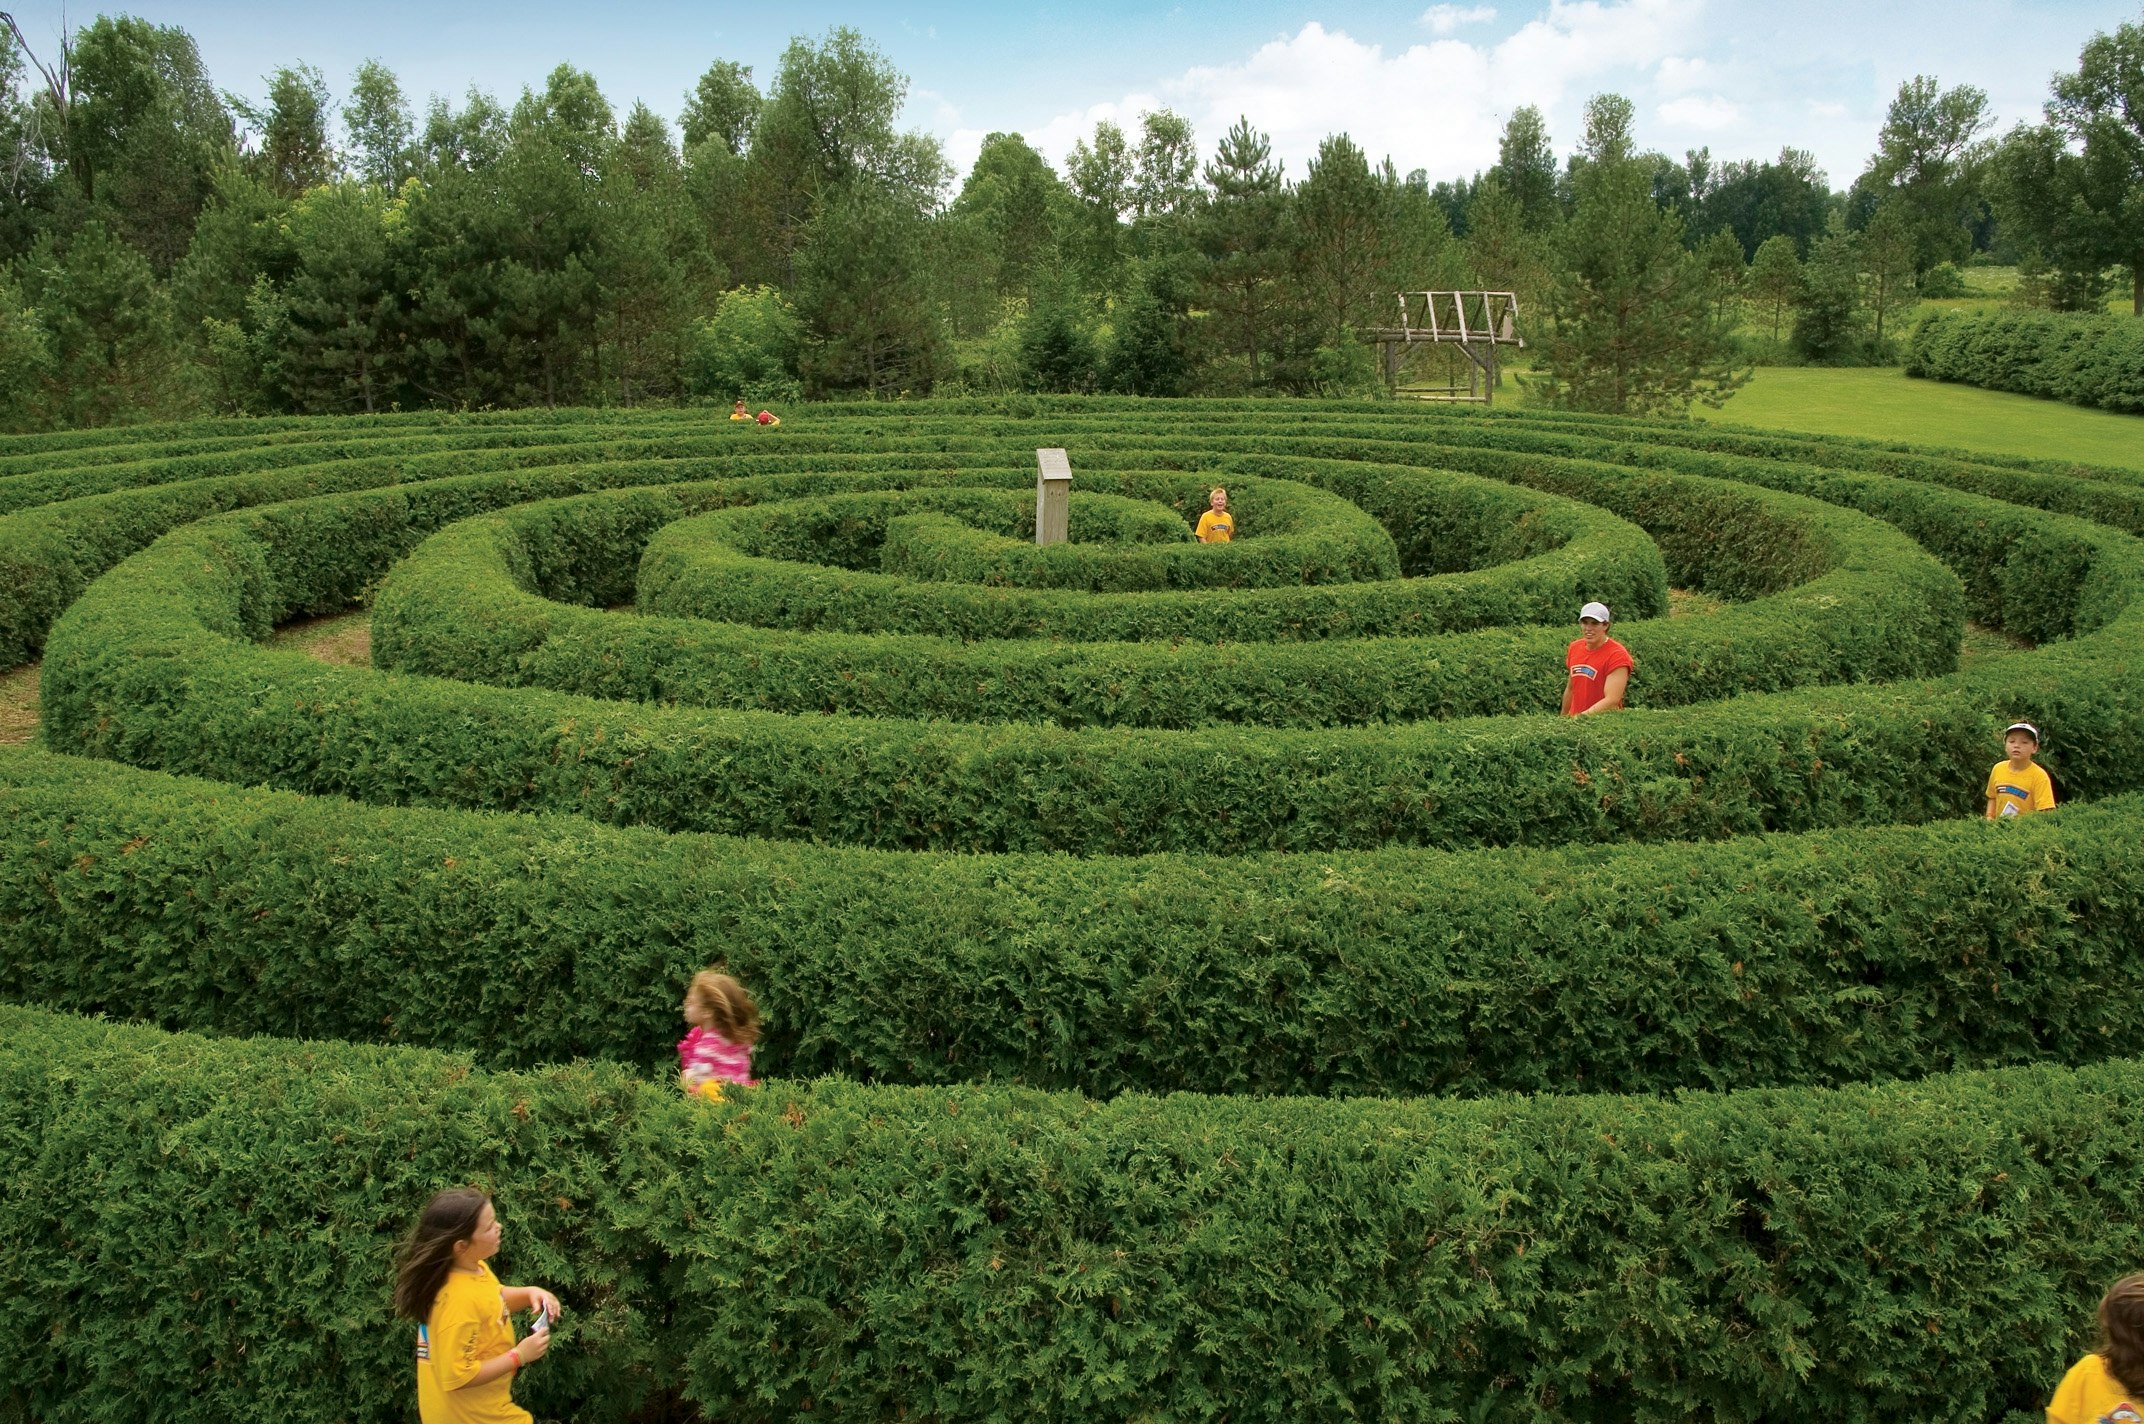 Features - Saunders Farm maze